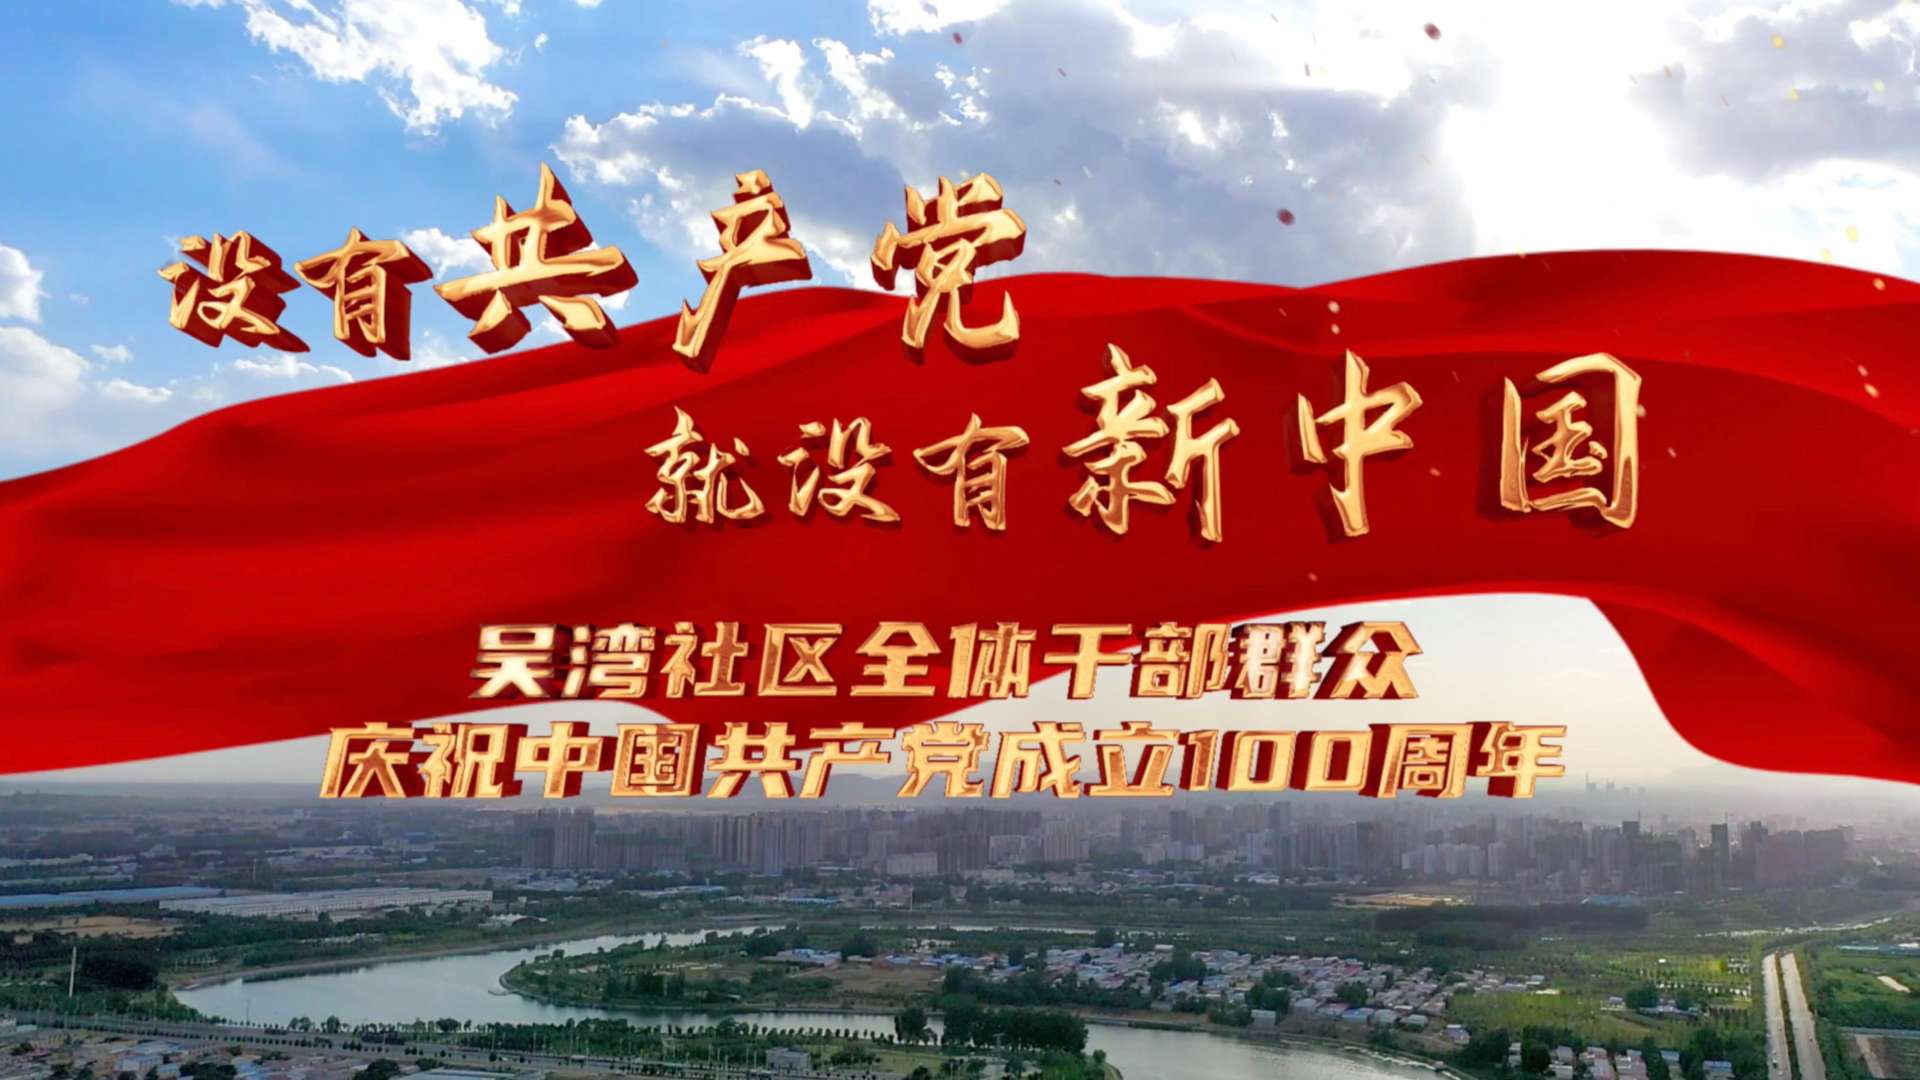 【耿亚伟监制 王迪导演】《没有共产党就没有新中国》